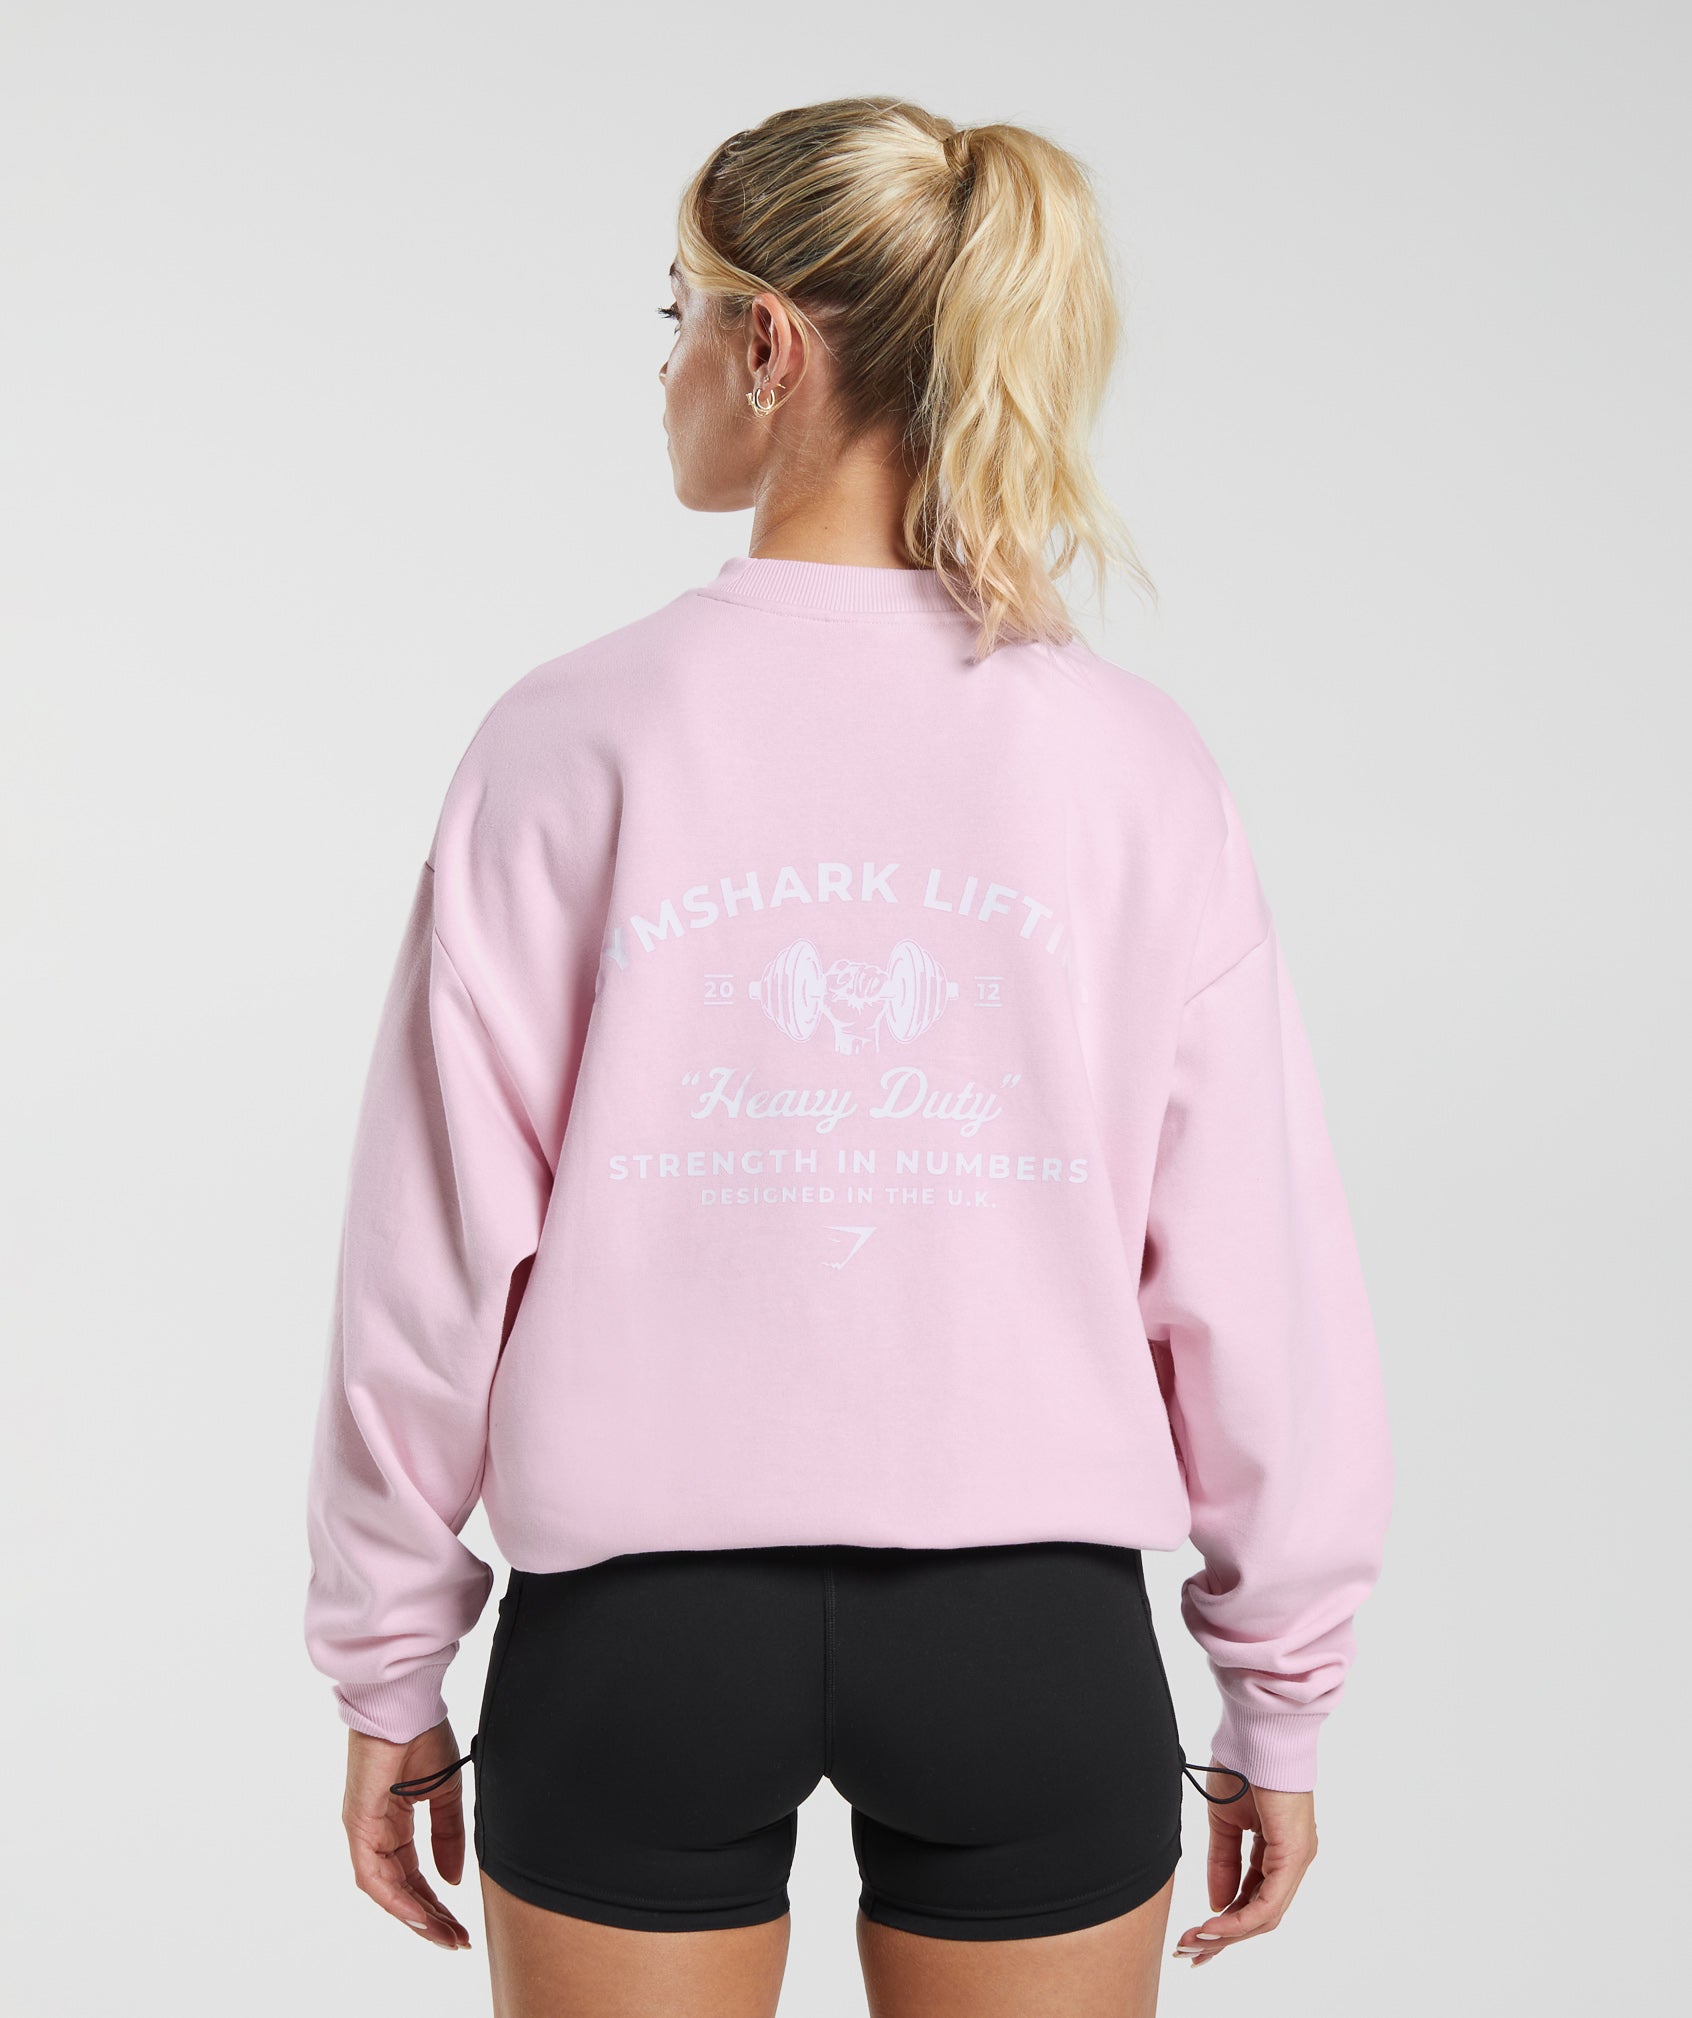 Heavy Duty Oversized Sweatshirt in Lemonade Pink - view 1